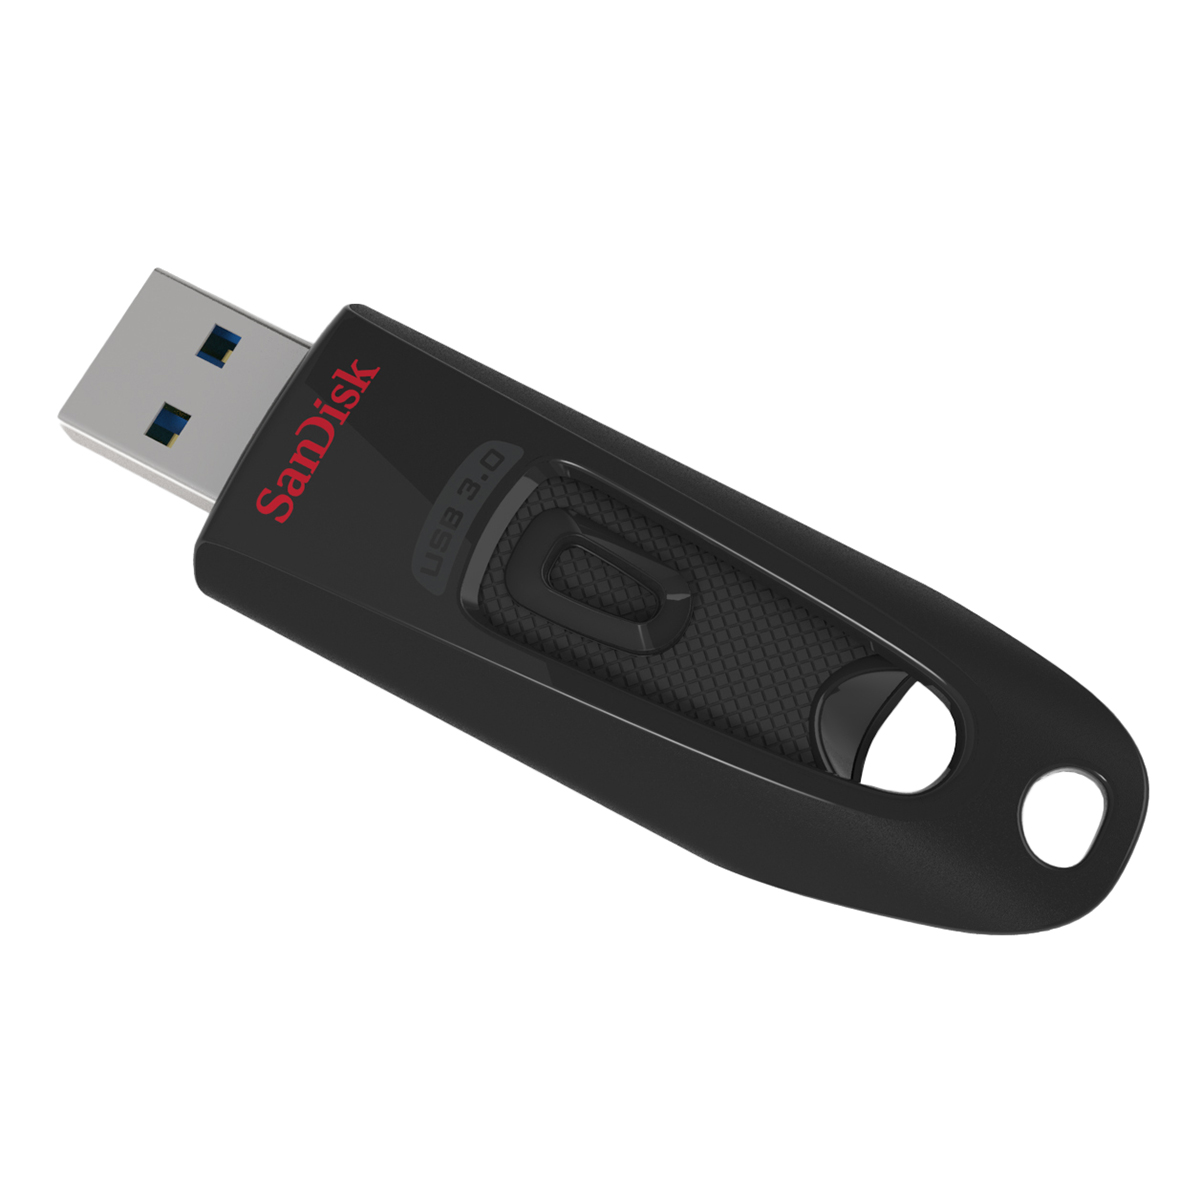 USB SanDisk 3.0 Ultra CZ48 32GB - Hàng Chính Hãng